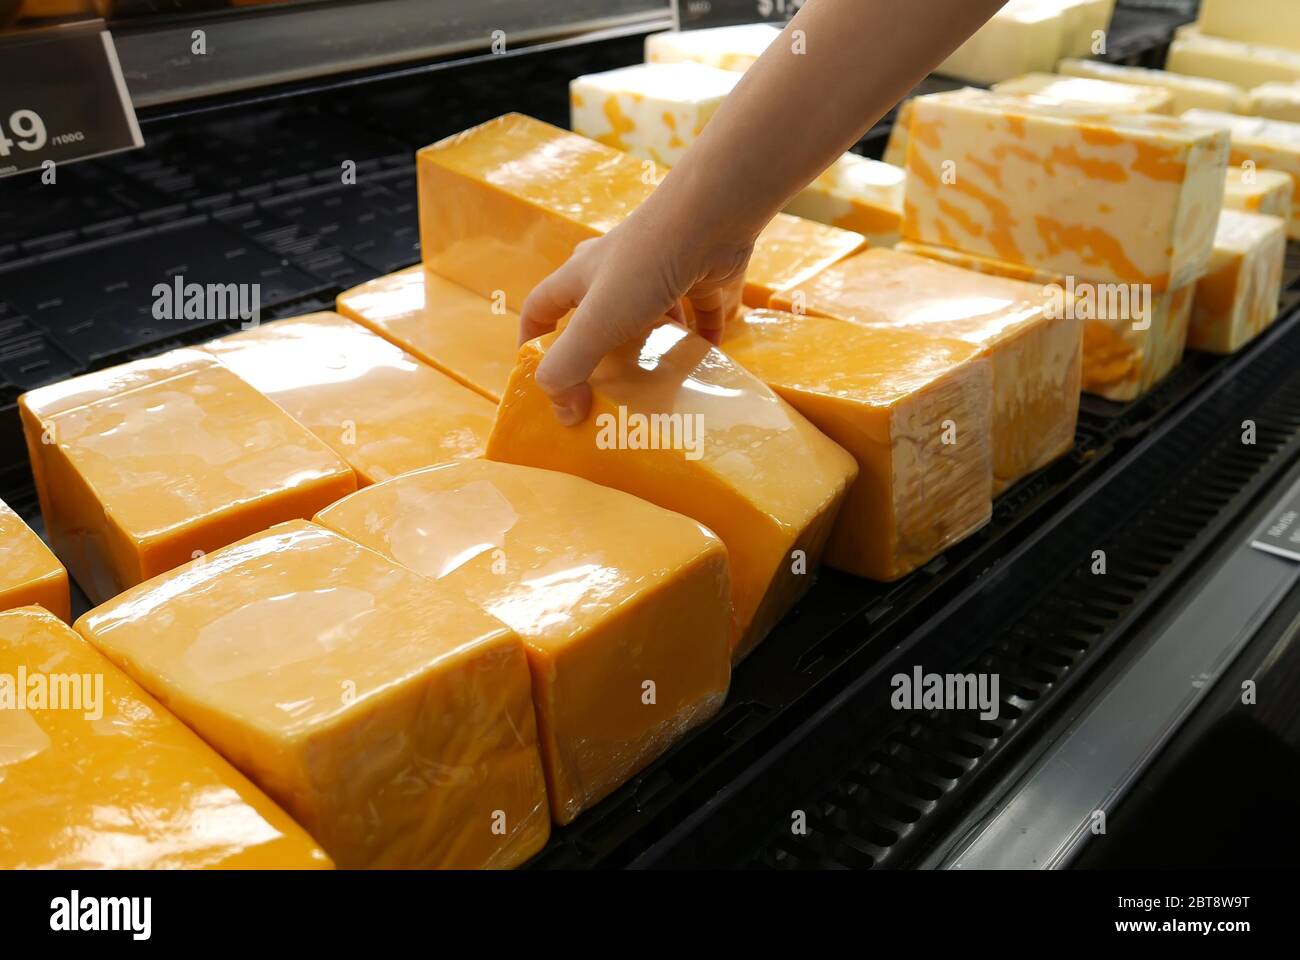 Movimento della mano della donna che raccoglie il formaggio all'interno del negozio Foto Stock